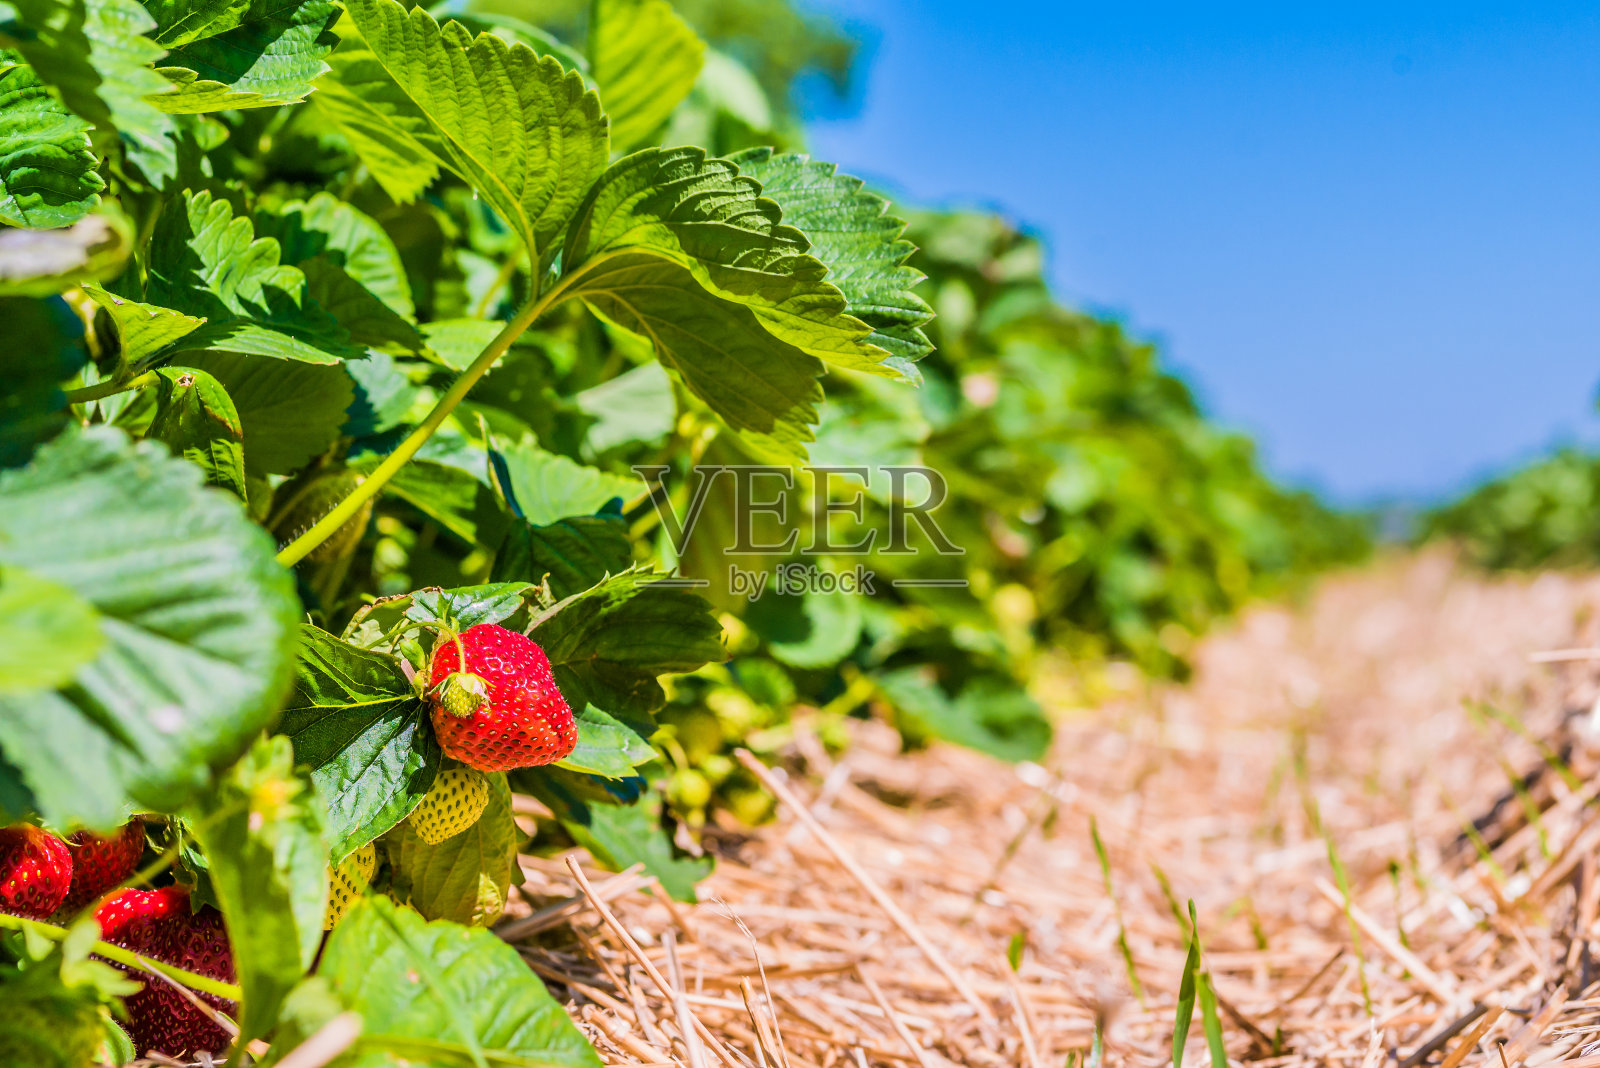 草莓。有一些成熟水果的花园床。背景是蓝色的天空照片摄影图片